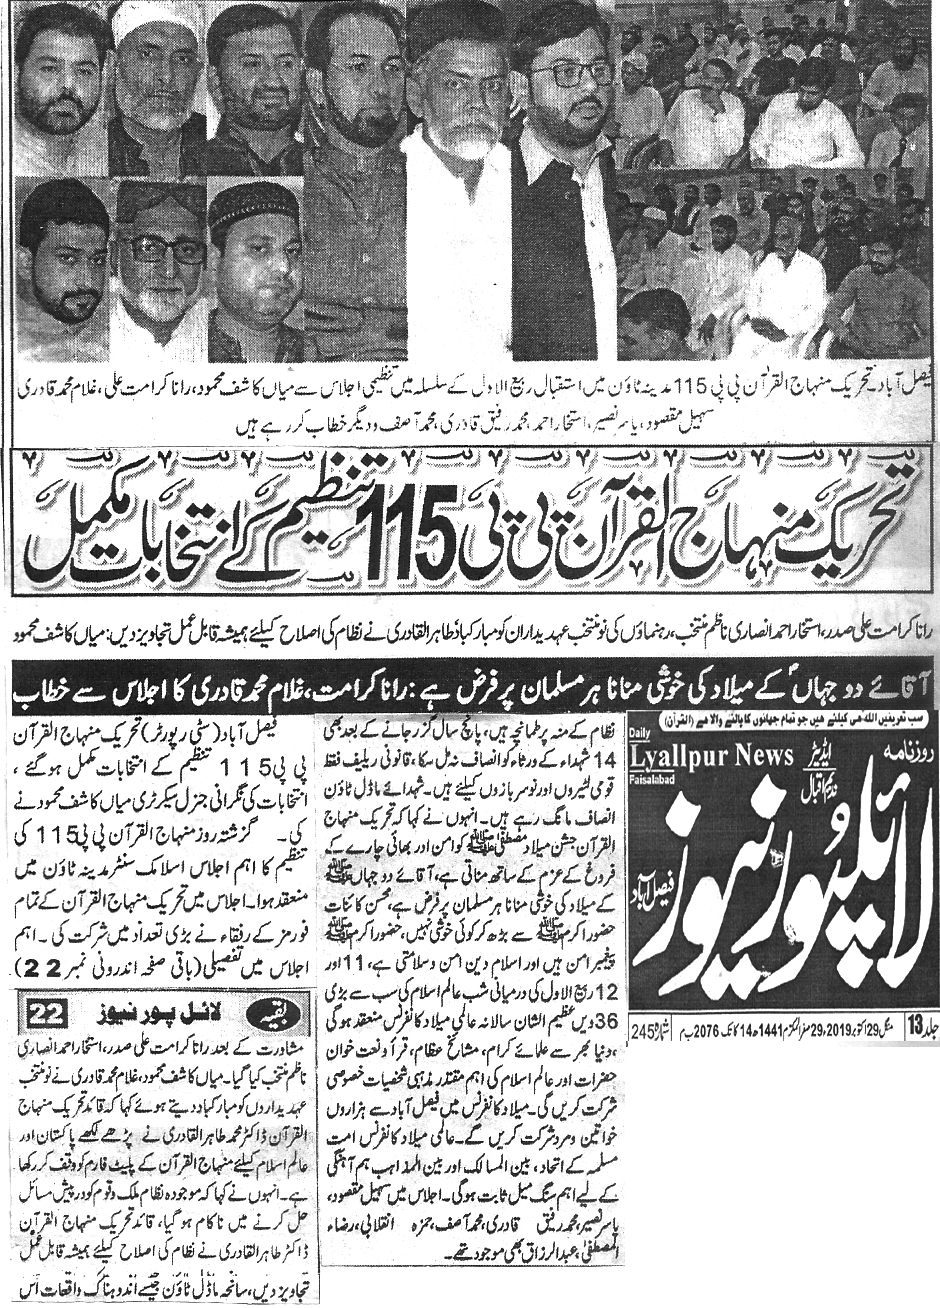 Minhaj-ul-Quran  Print Media Coverage Daily Lyaiipur News page 4 